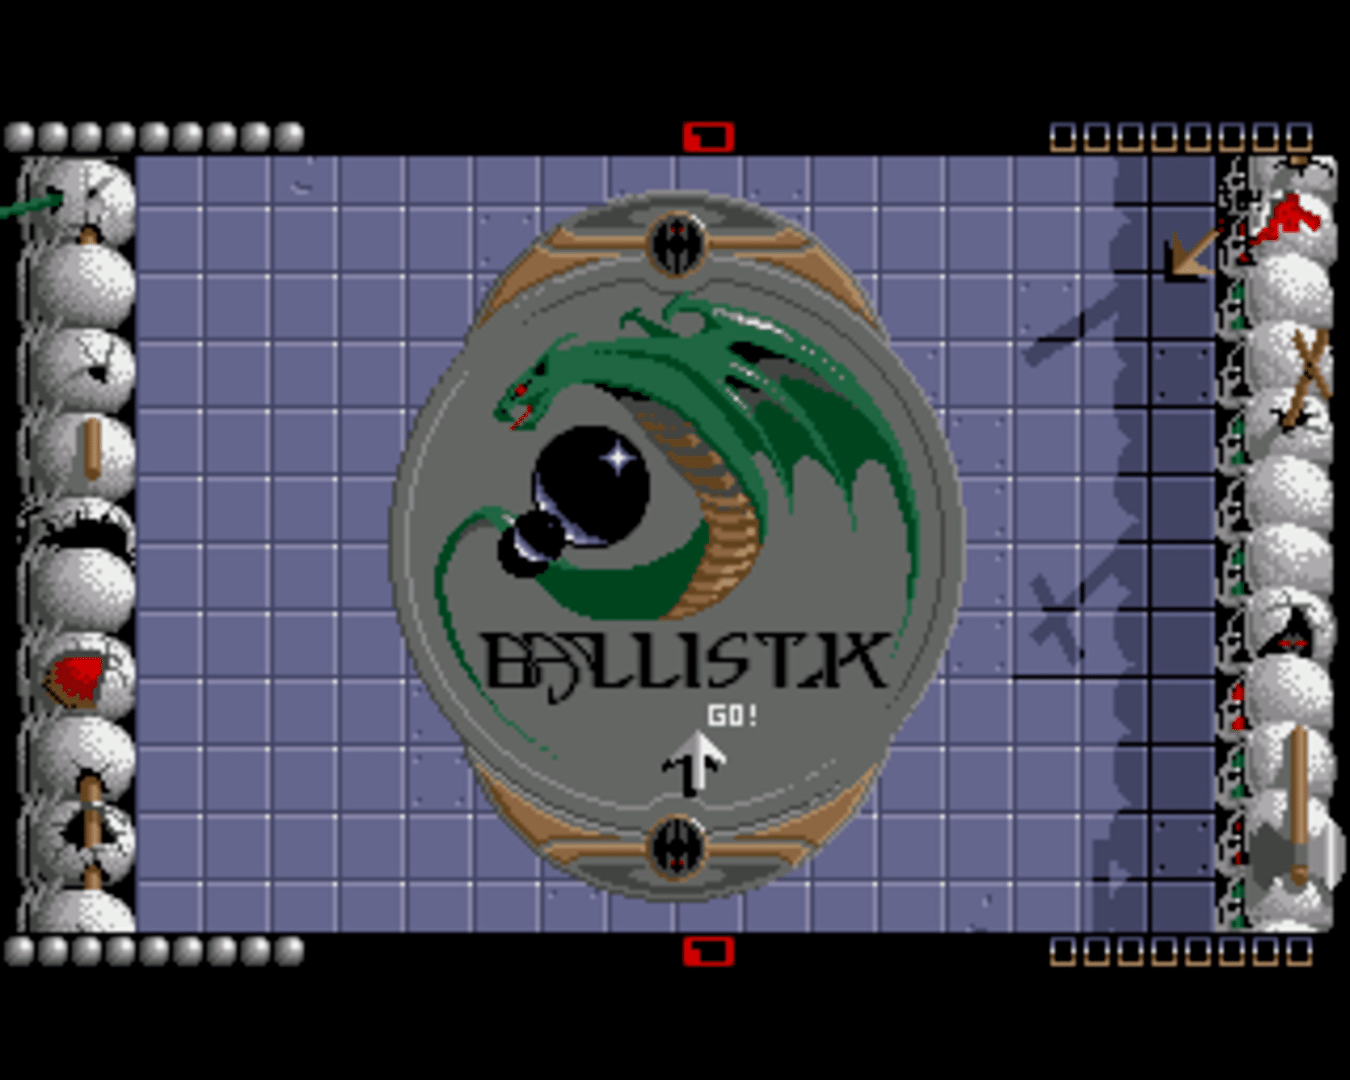 Ballistix screenshot